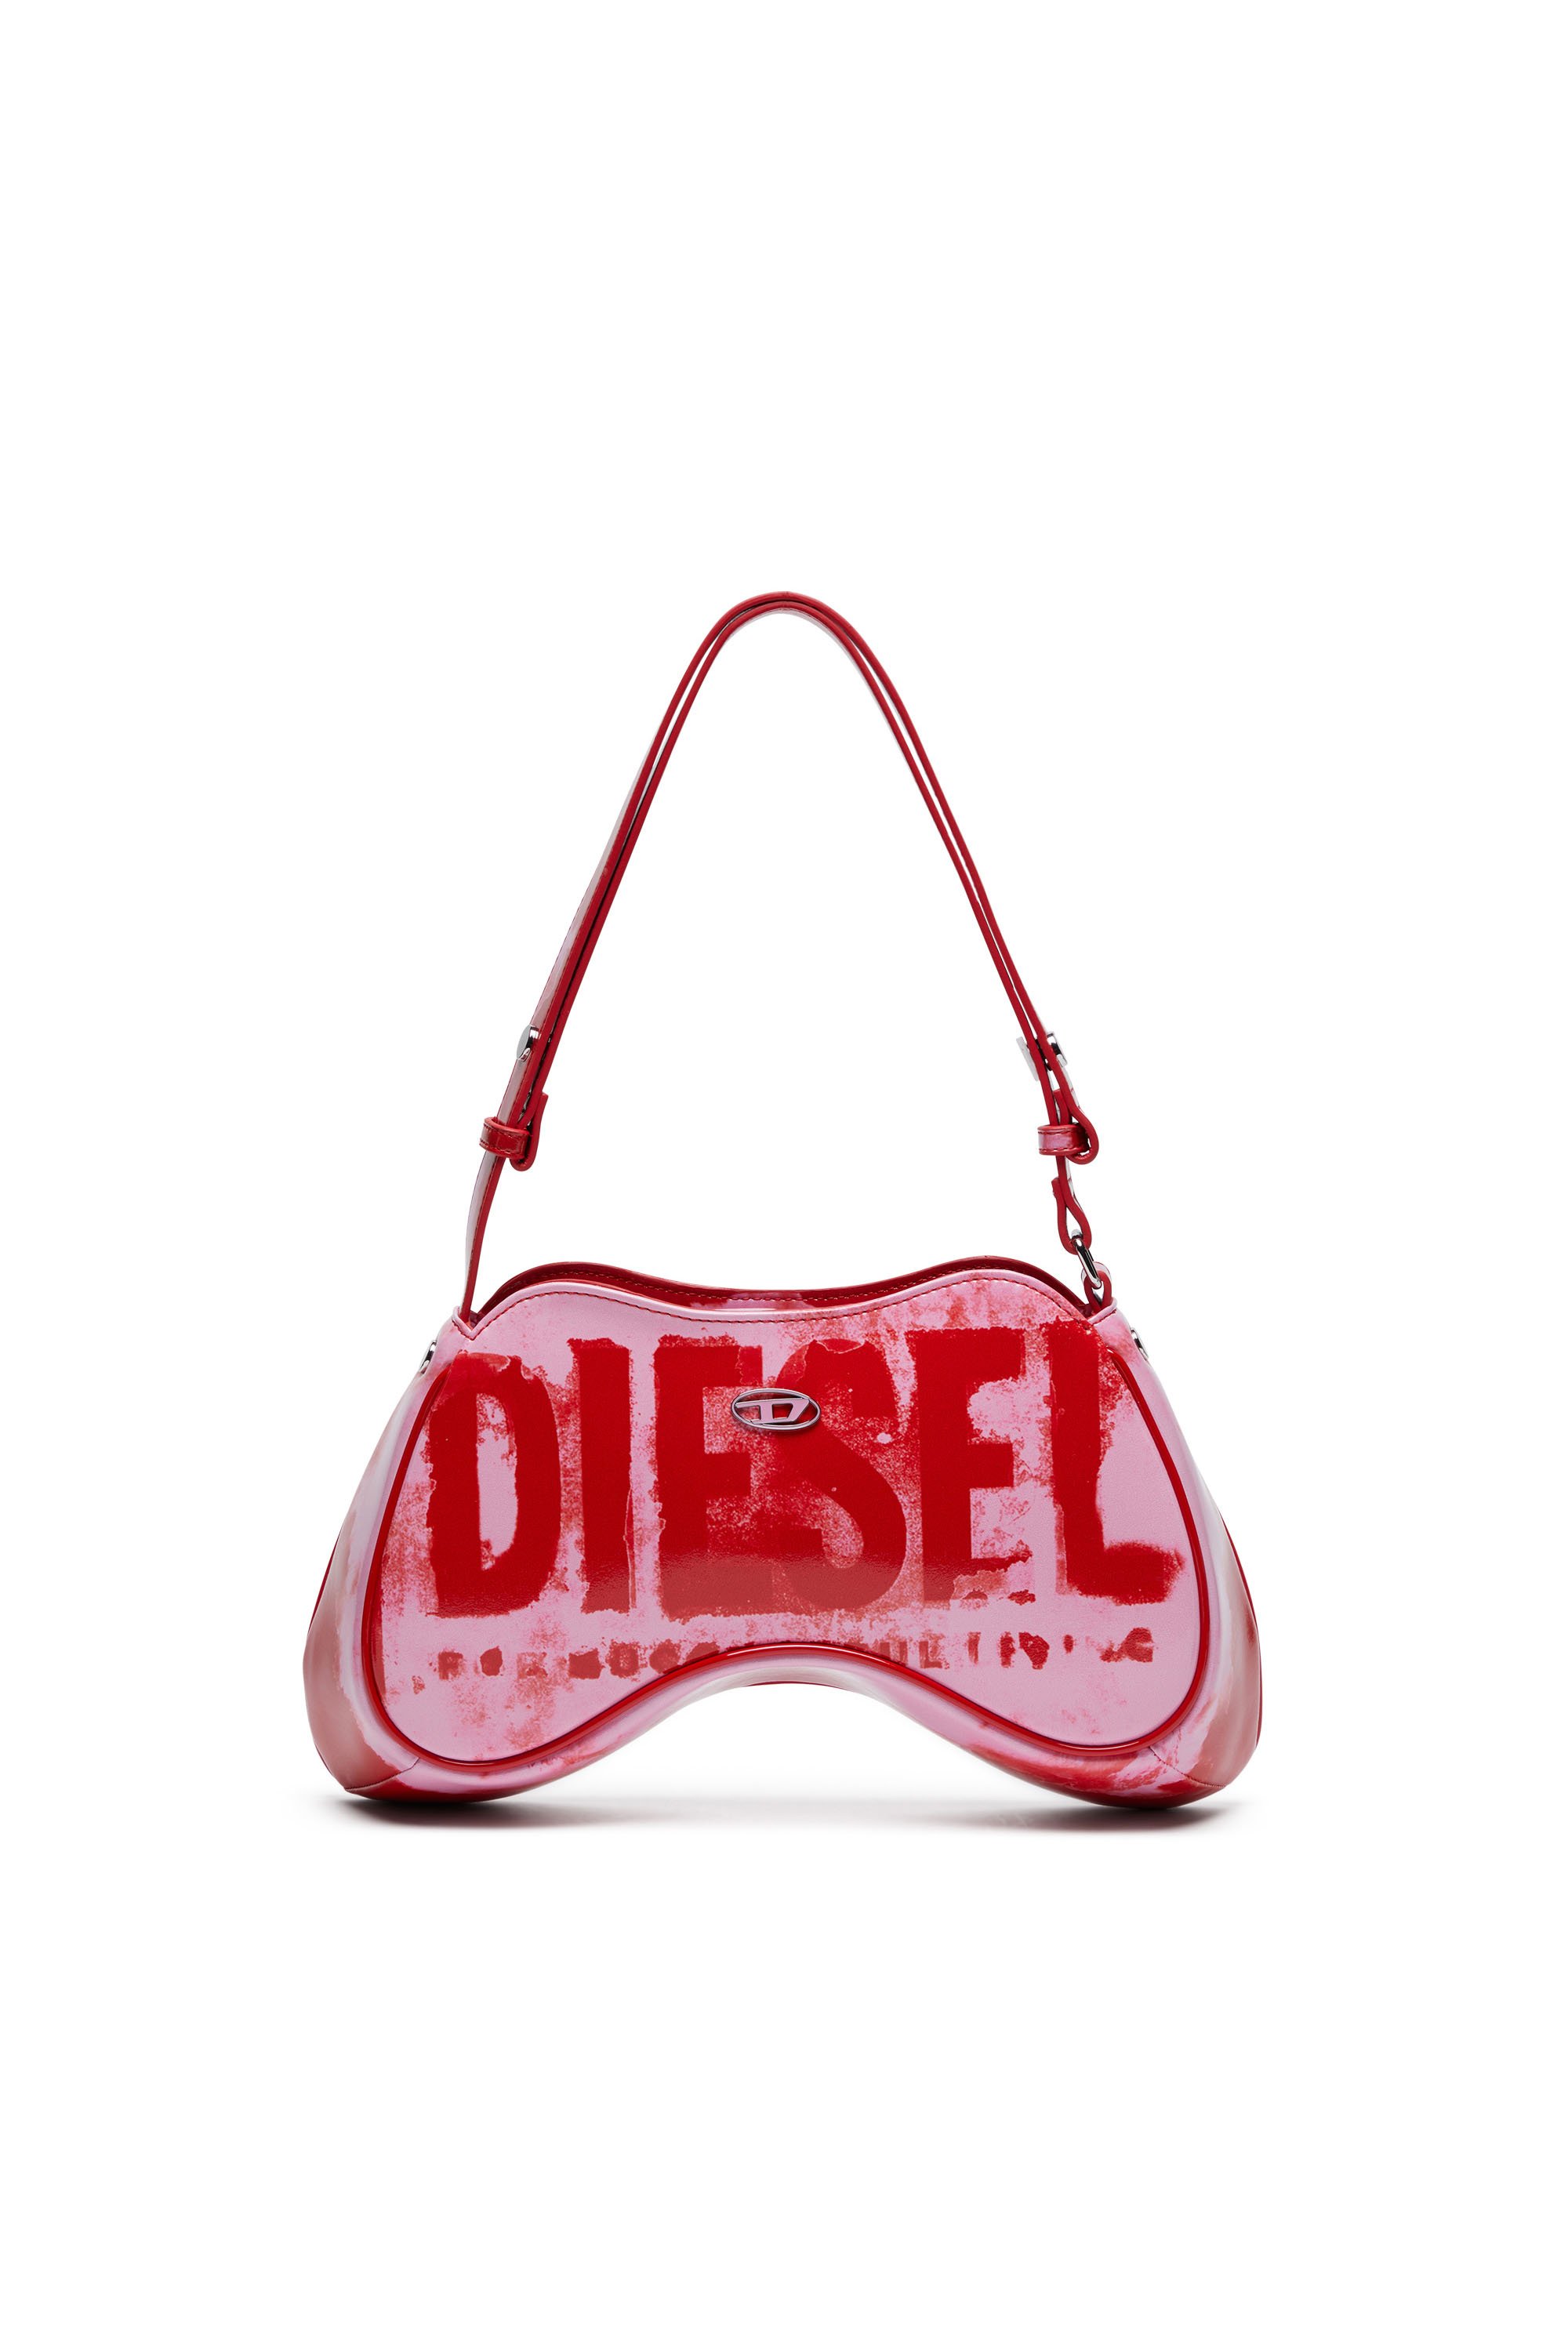 Diesel - PLAY SHOULDER, Rosa/Rojo - Image 1